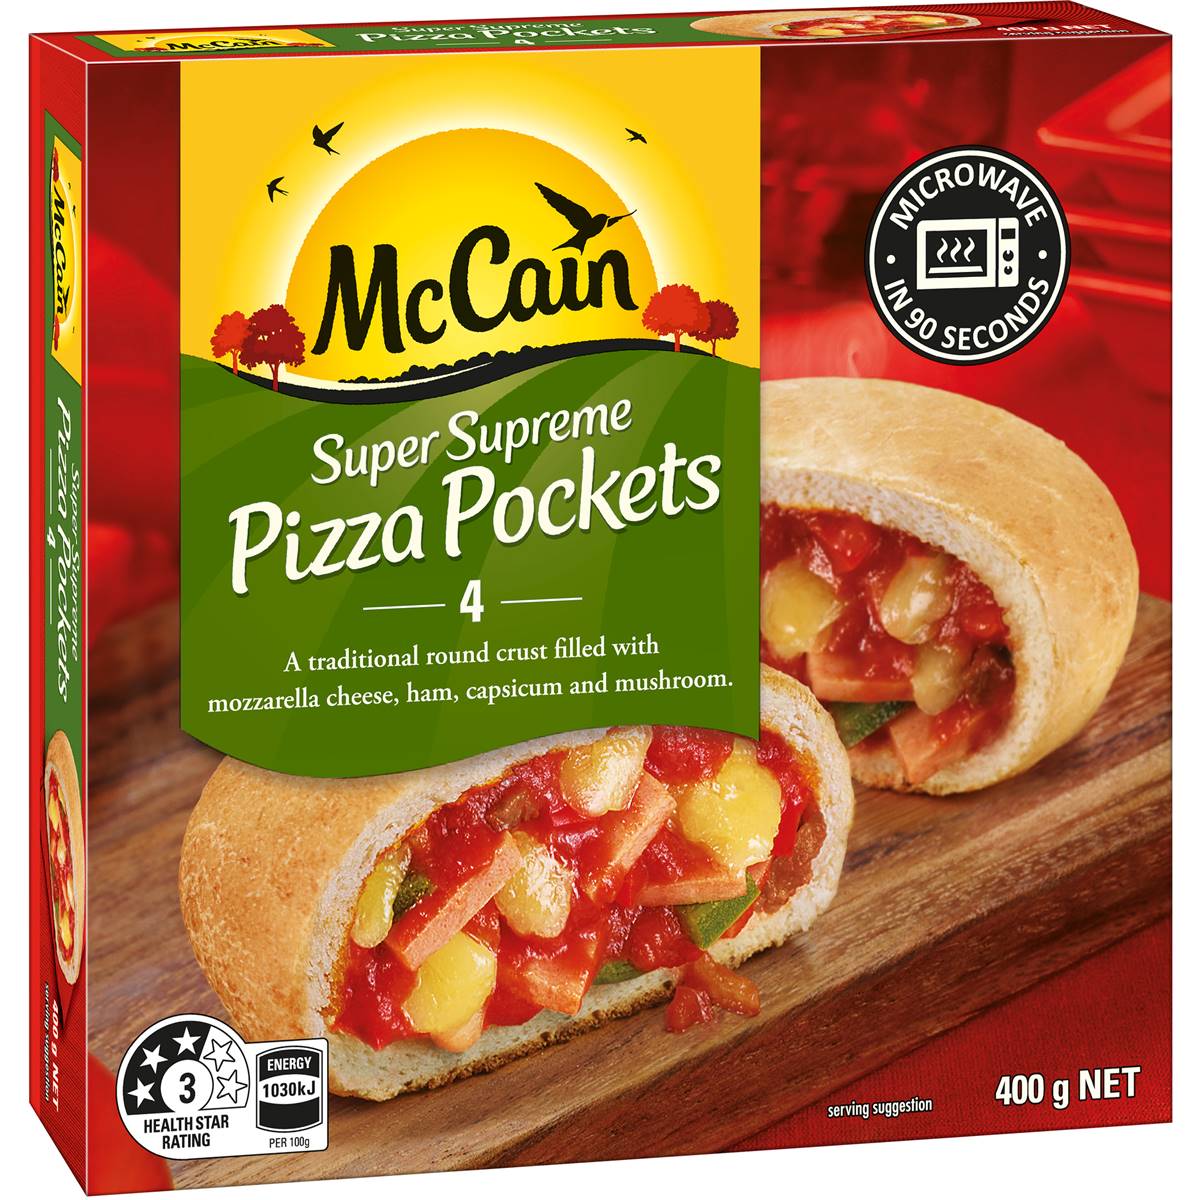 Calories in Mccain Pizza Pockets Super Supreme